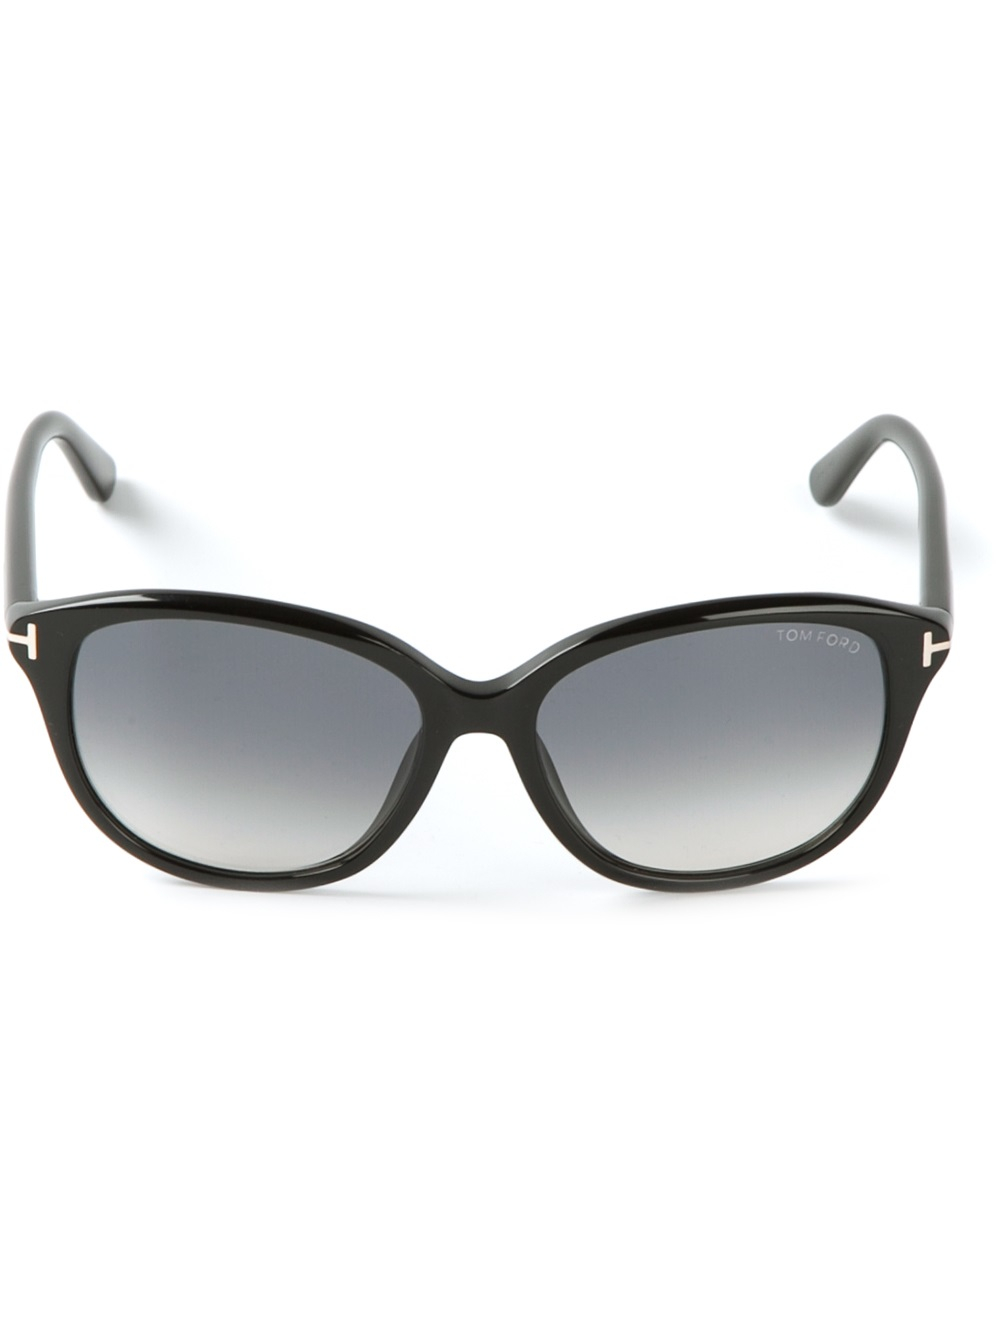 Tom ford round frame sunglasses #8